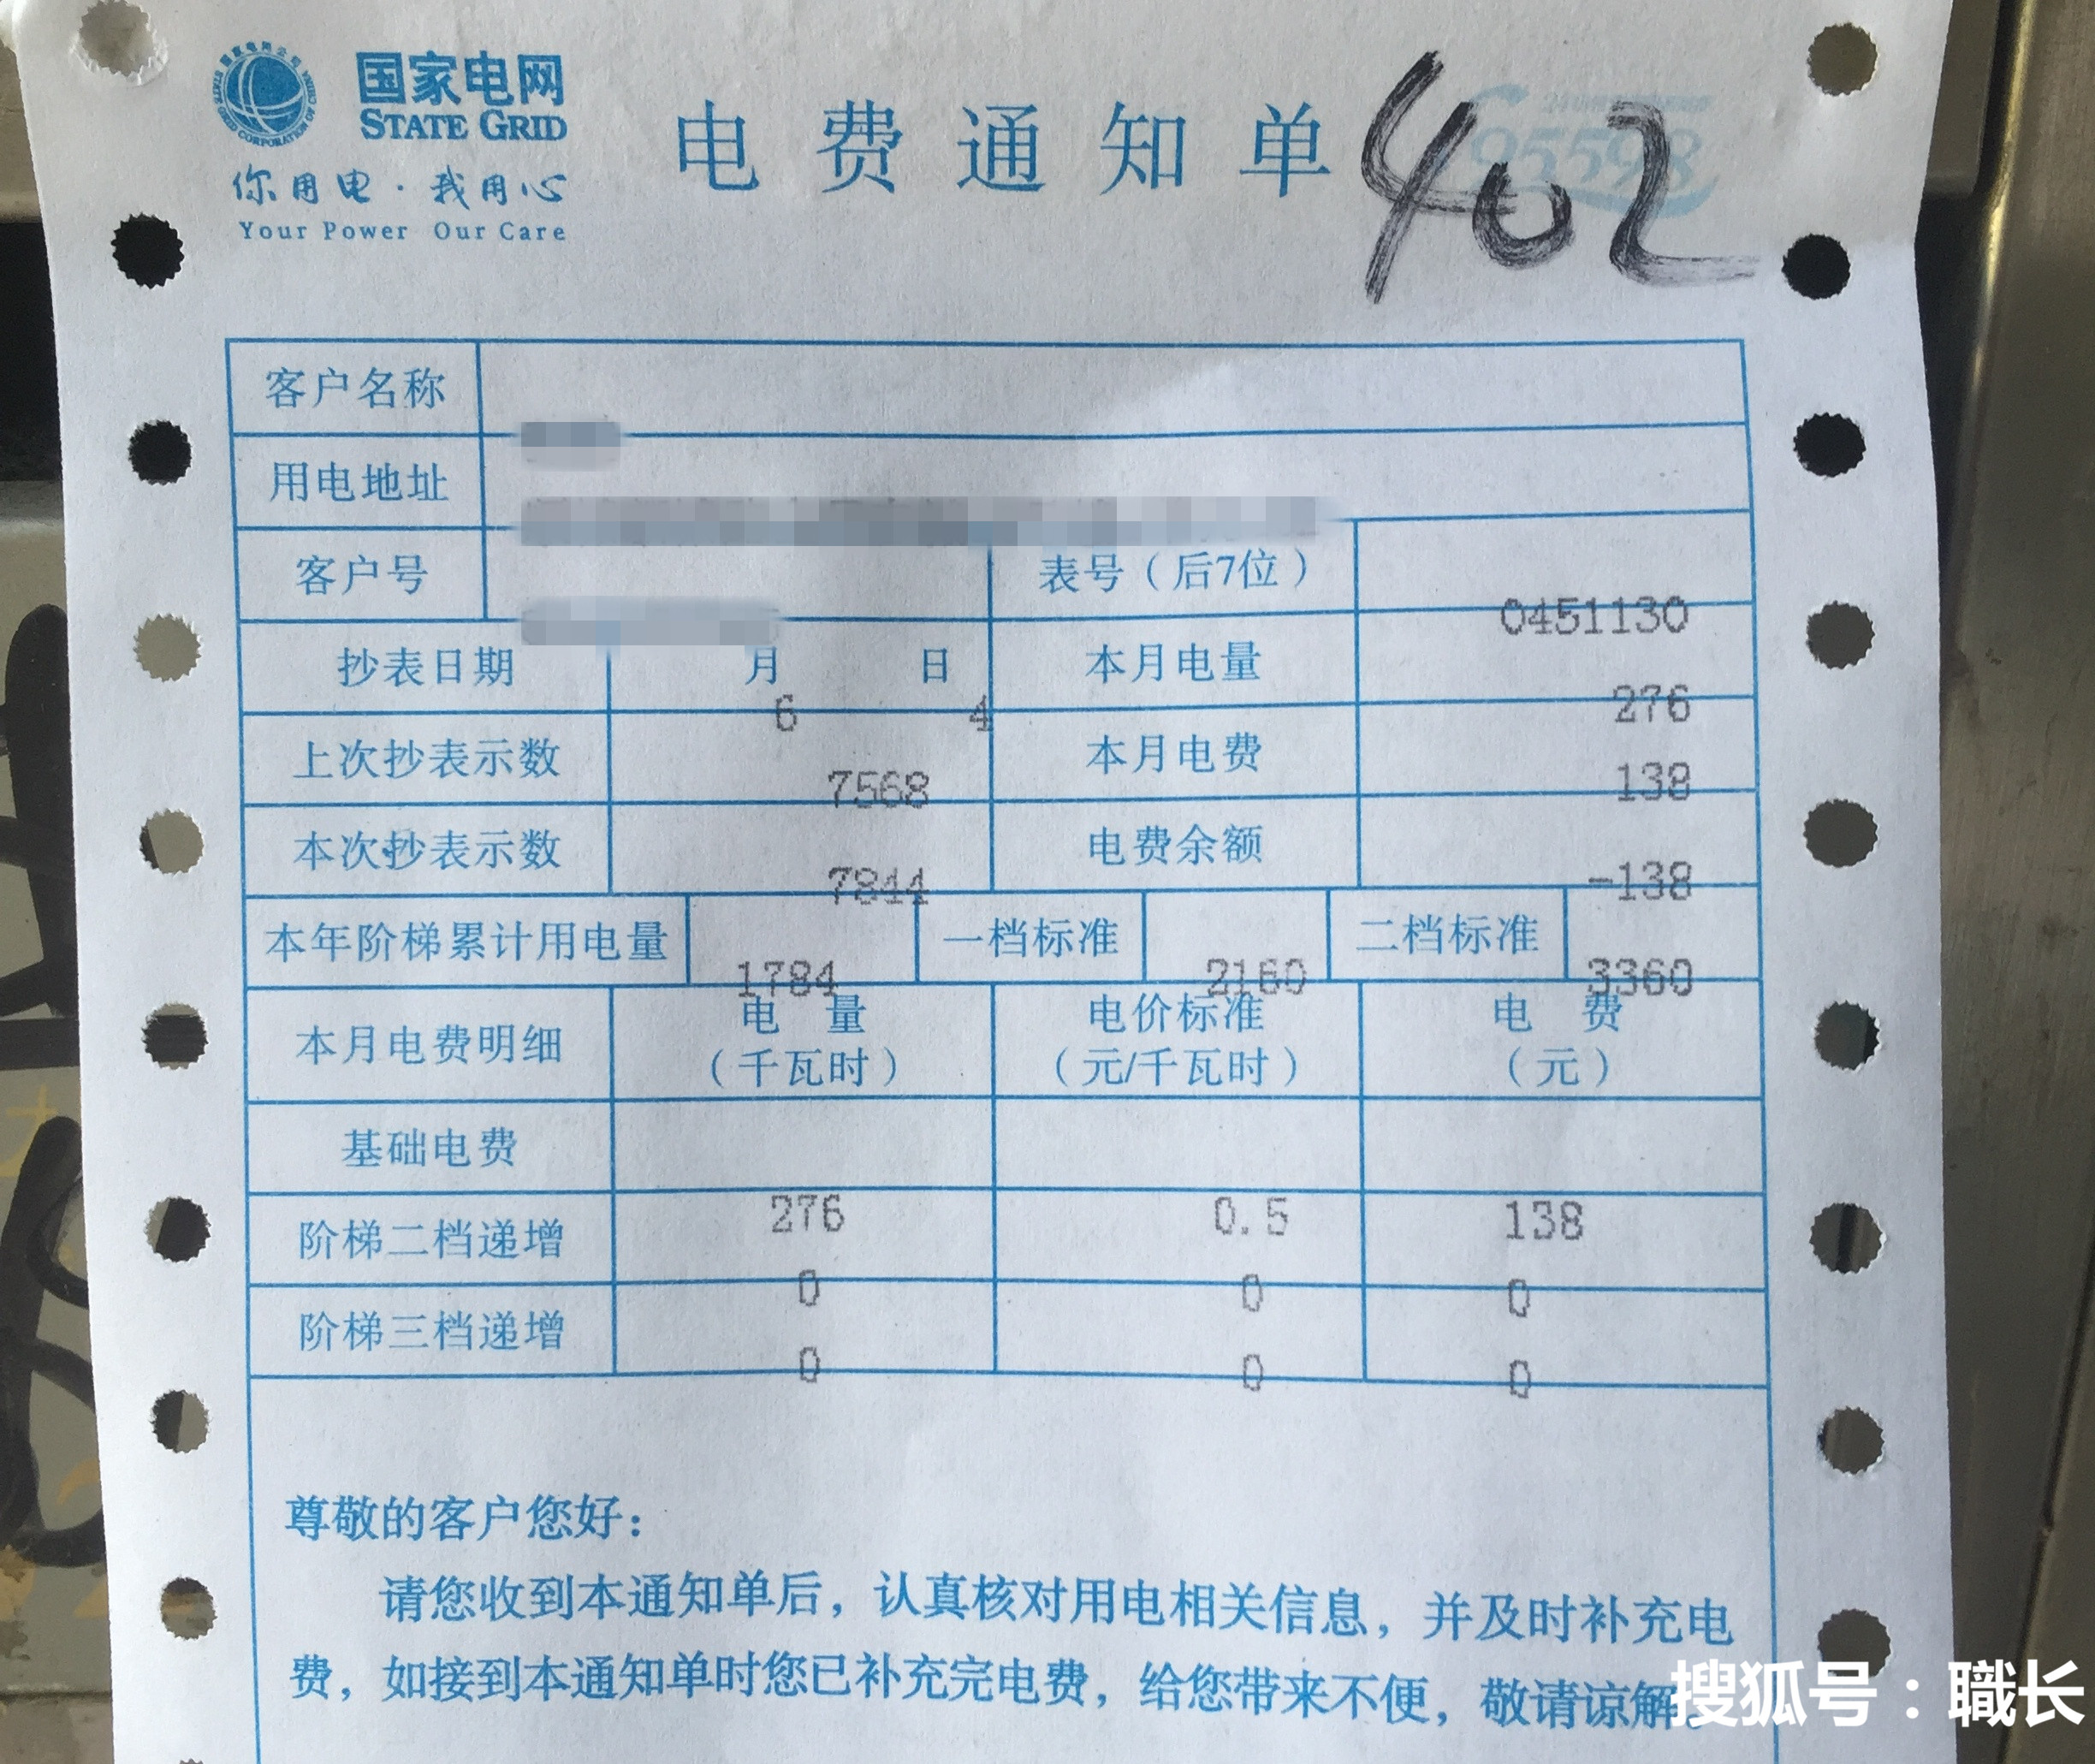 重庆居民分时电价机制 6 月 1 日起执行，如何看待此方案？ - 知乎